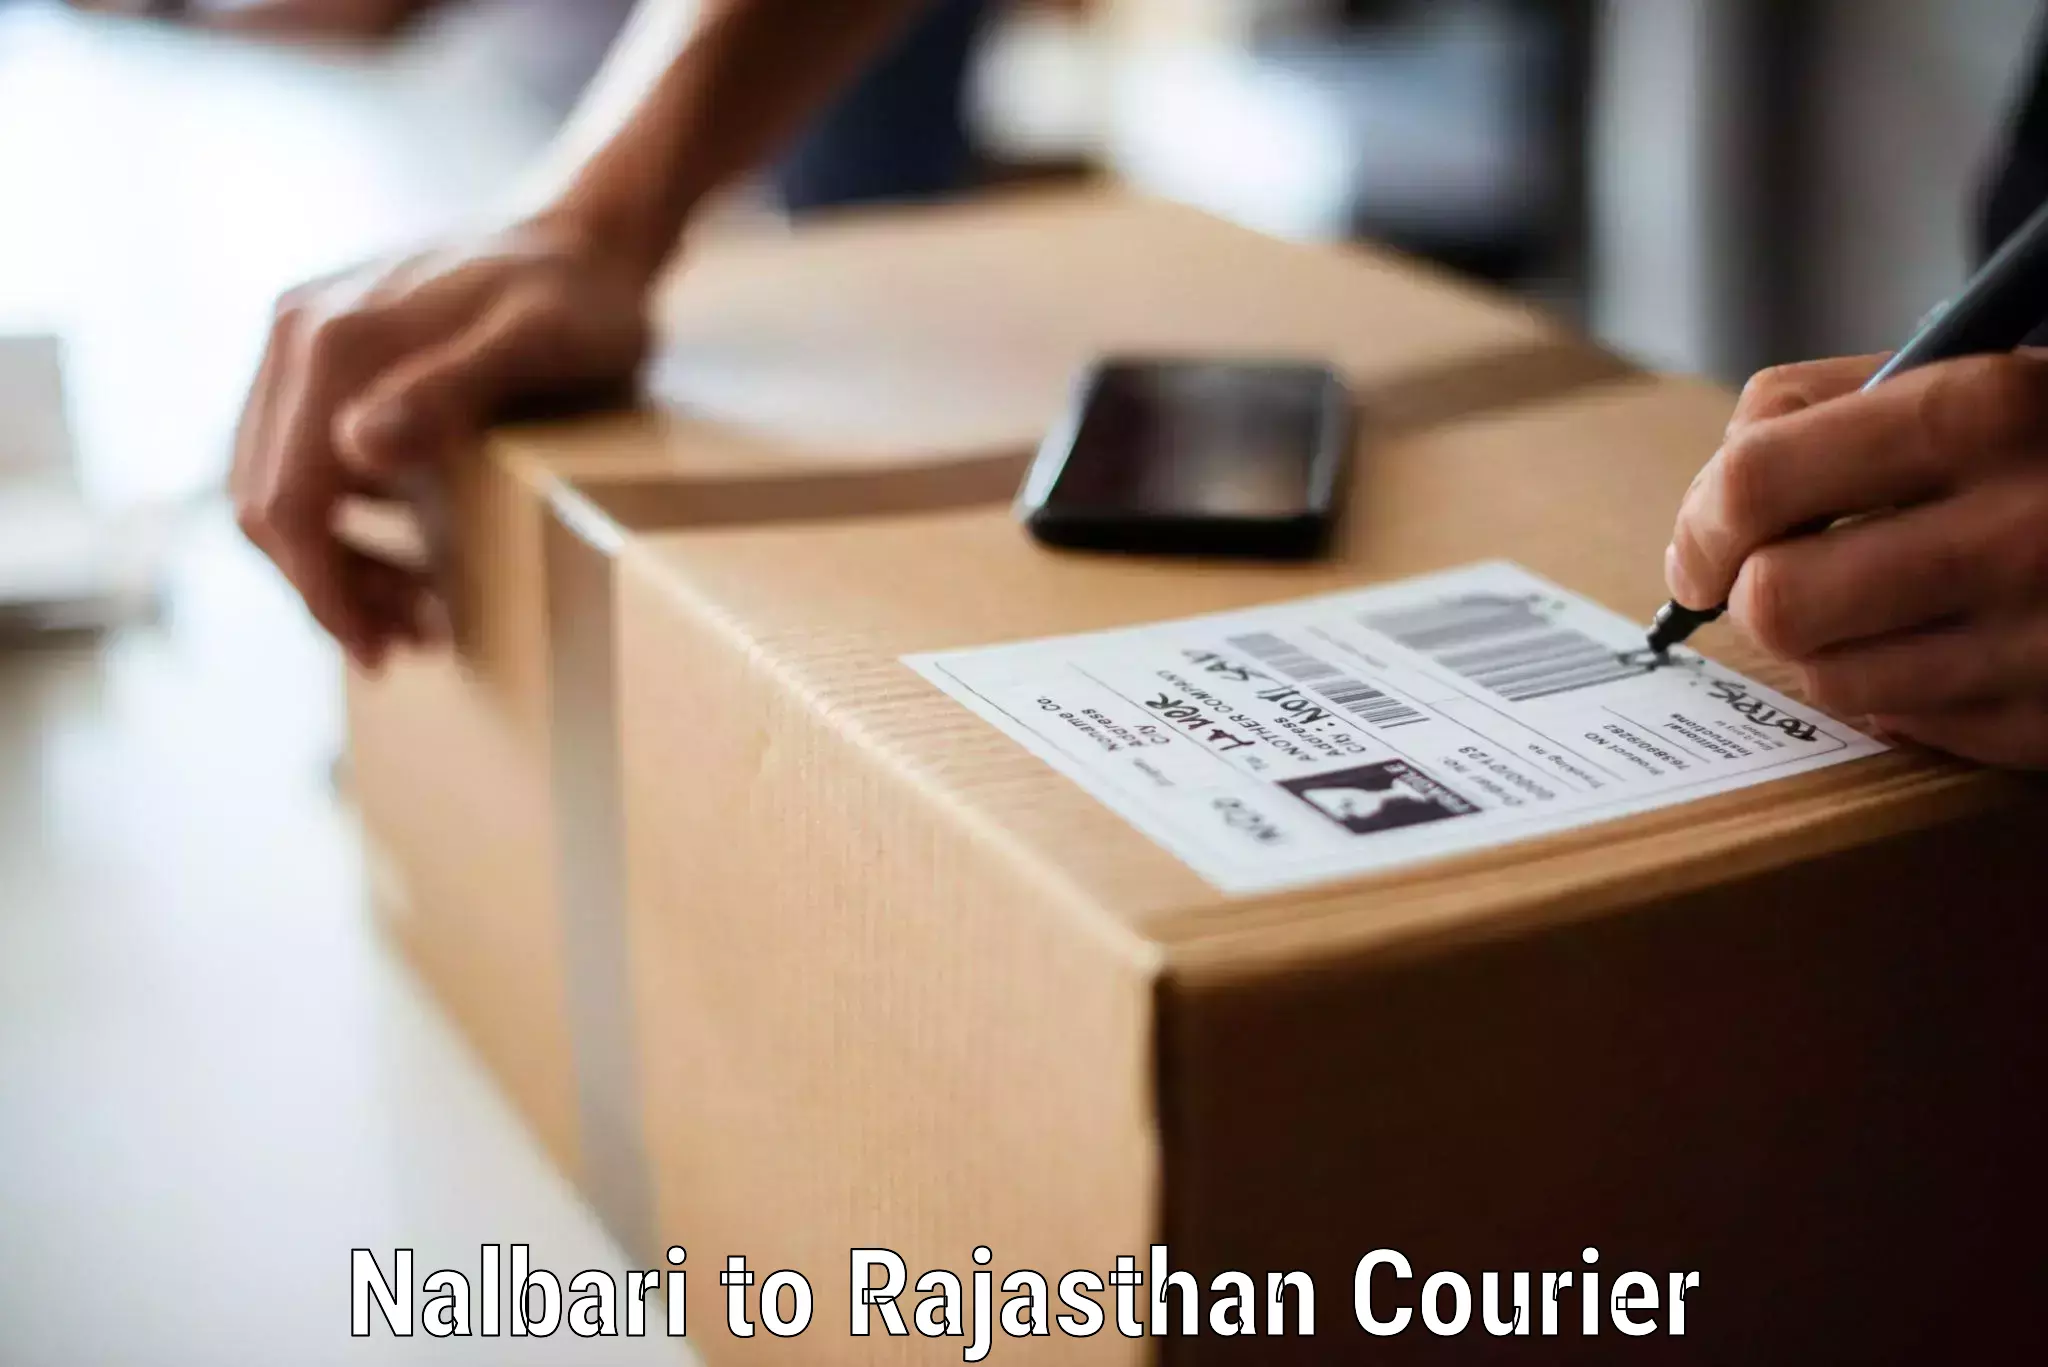 Furniture moving experts Nalbari to Anupgarh